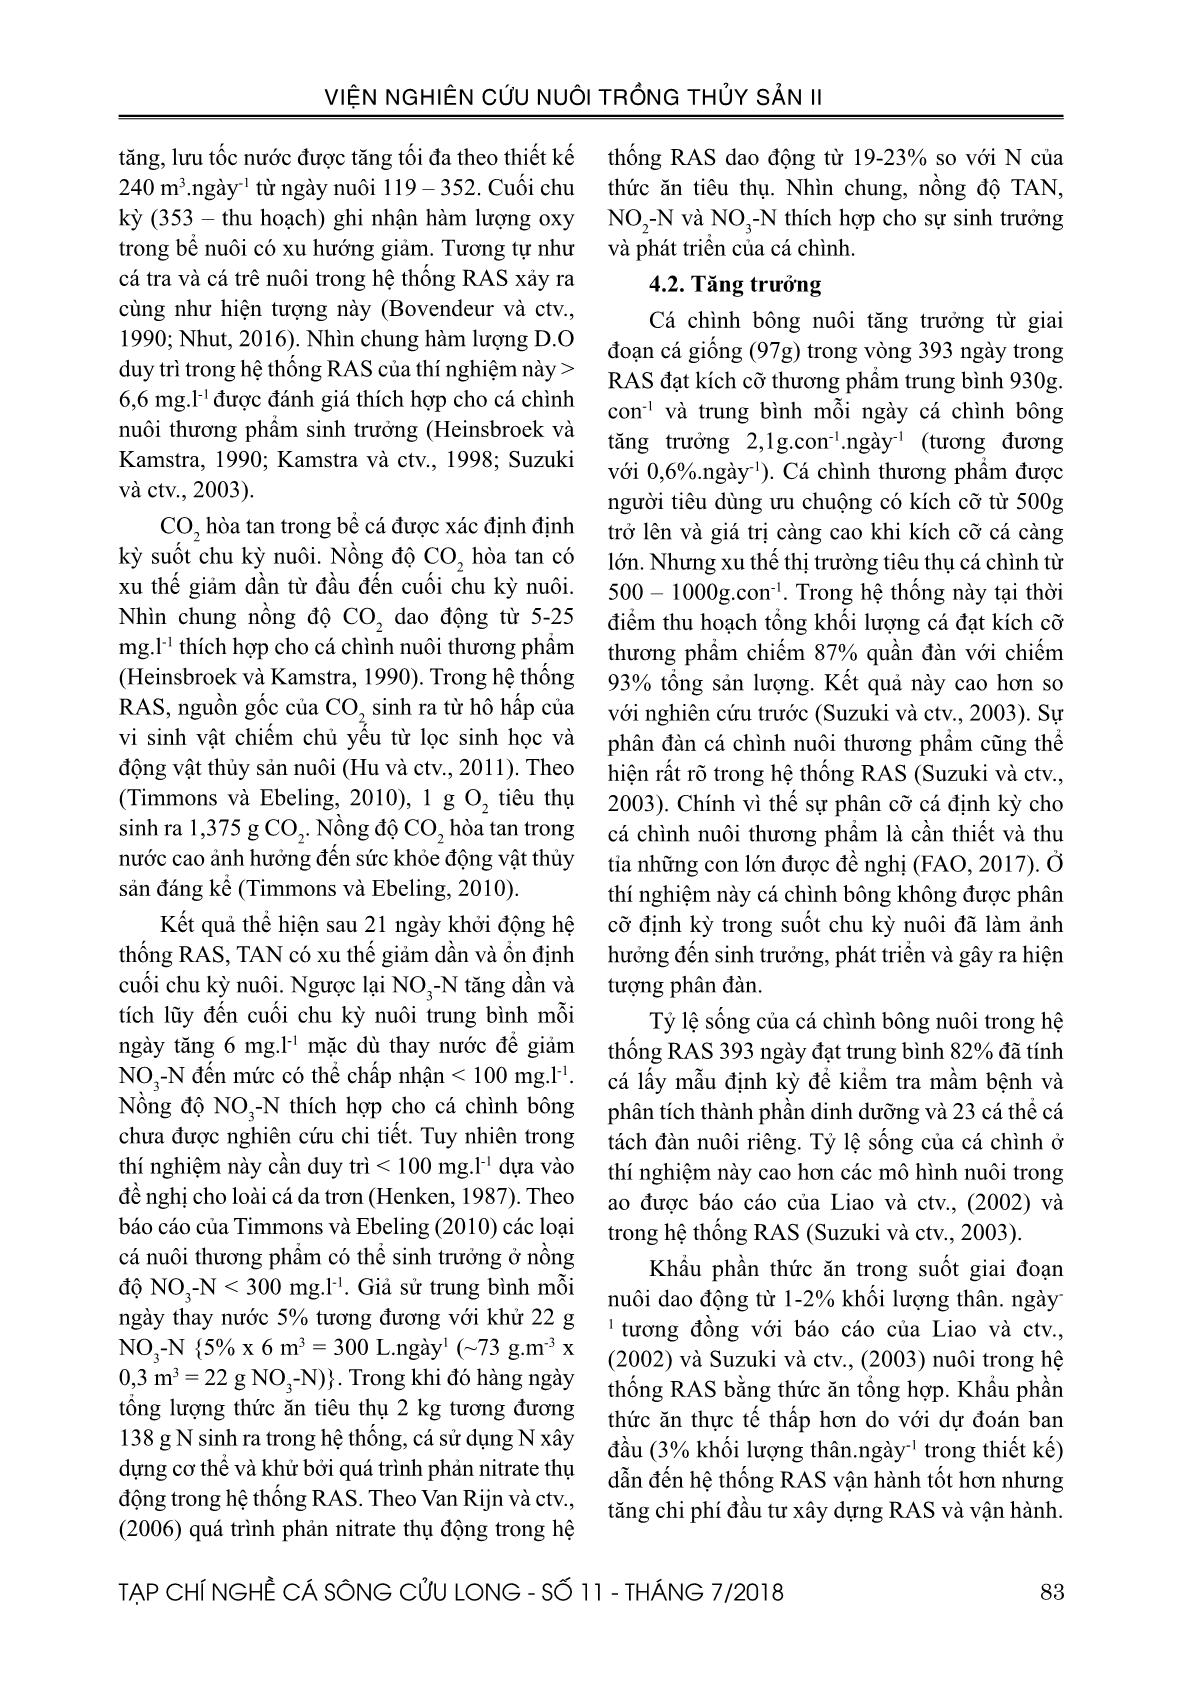 Ứng dụng công nghệ tuần hoàn để nuôi cá chình bông (Anguilla marmorata Quoy & Gaimard, 1824) trang 7